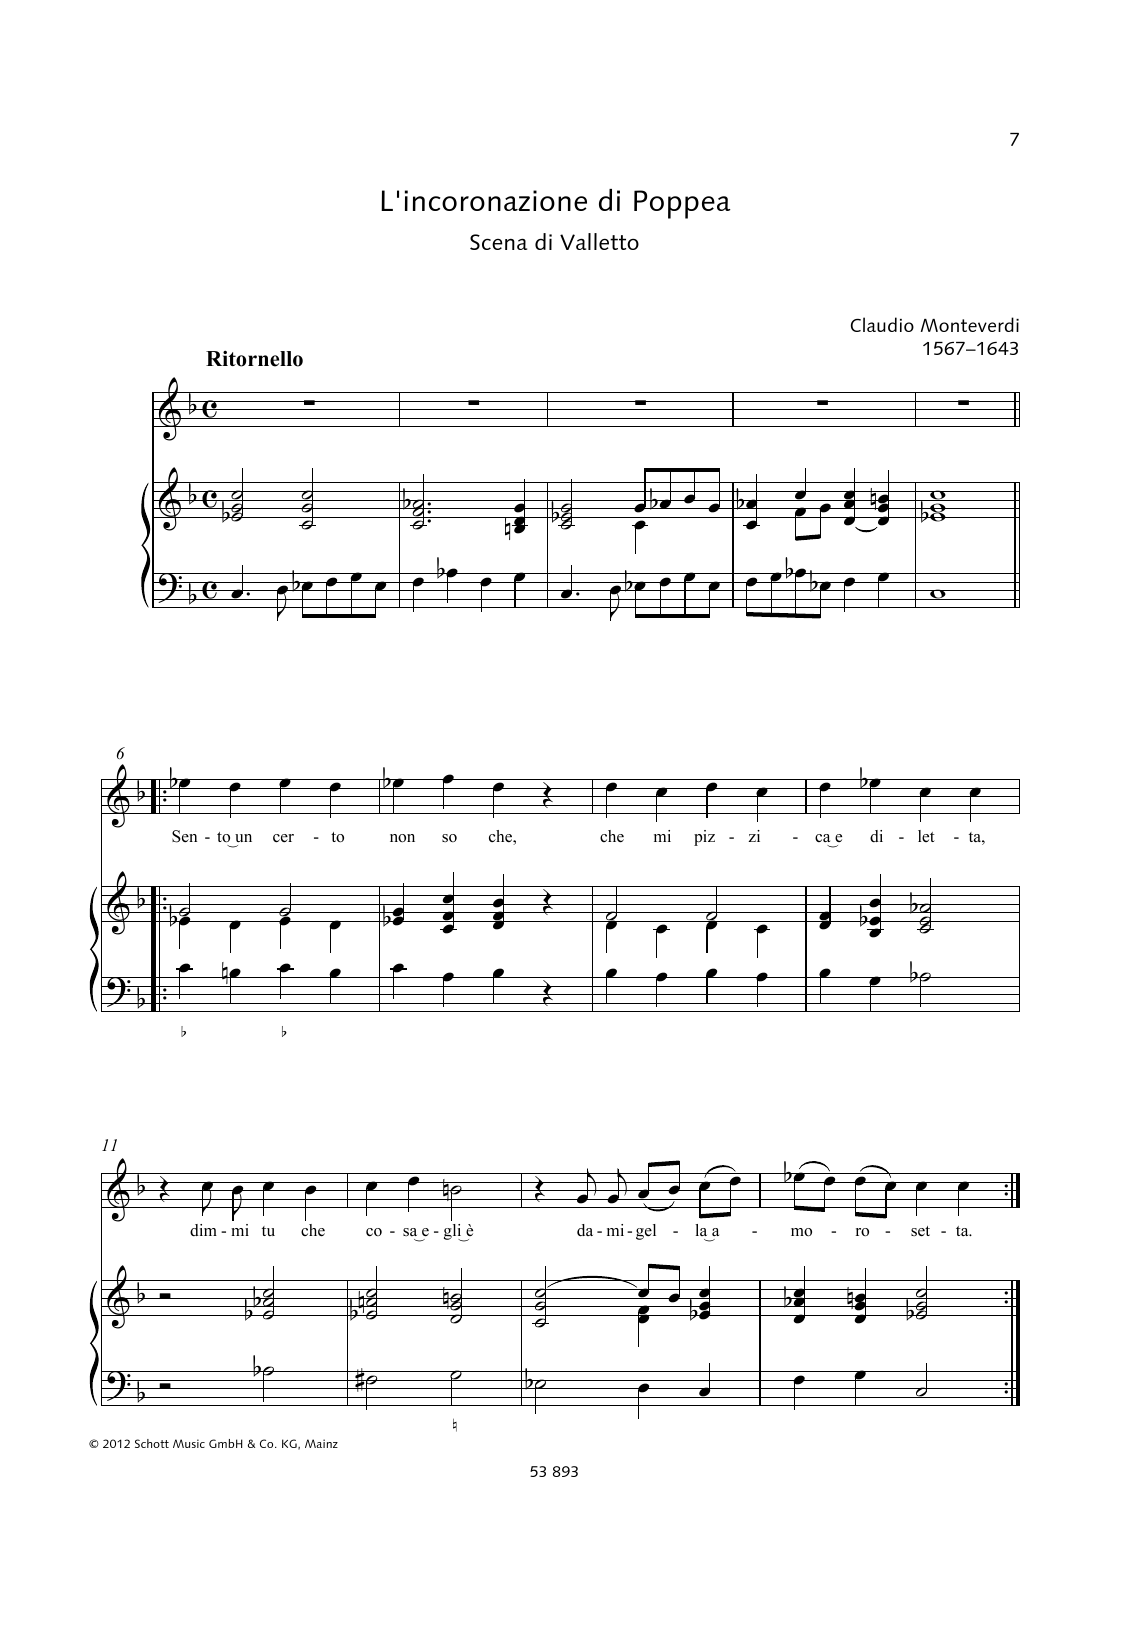 Claudio Monteverdi Sento un certo non so che Sheet Music Notes & Chords for Piano & Vocal - Download or Print PDF